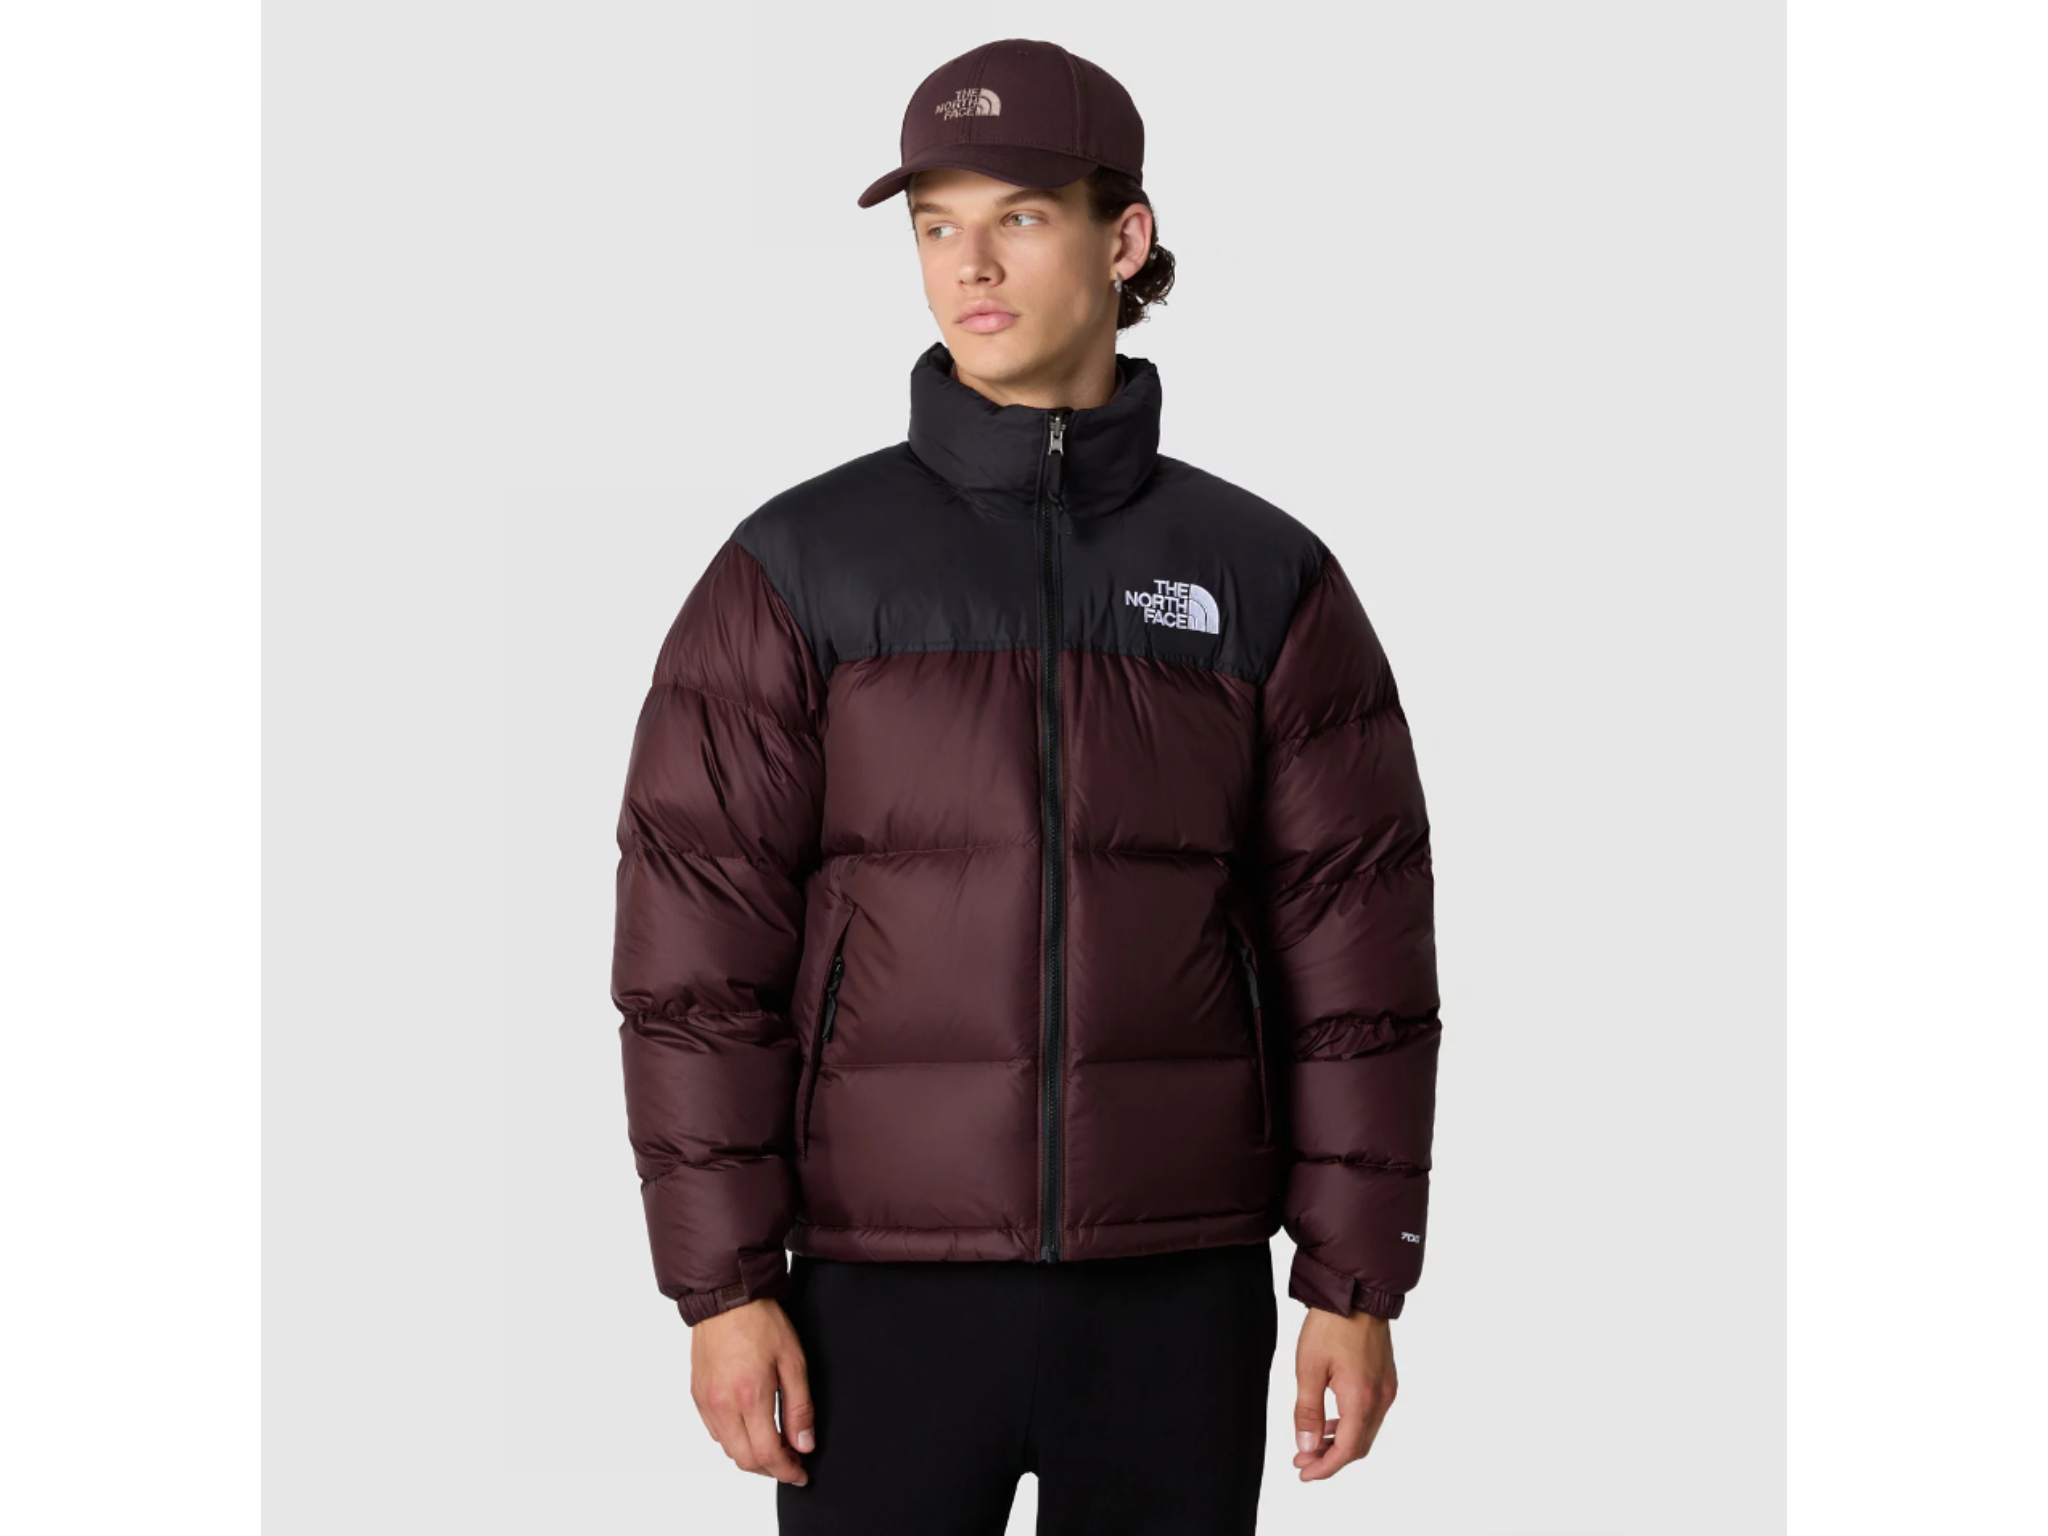 The North Face 1996 retro nuptse jacket